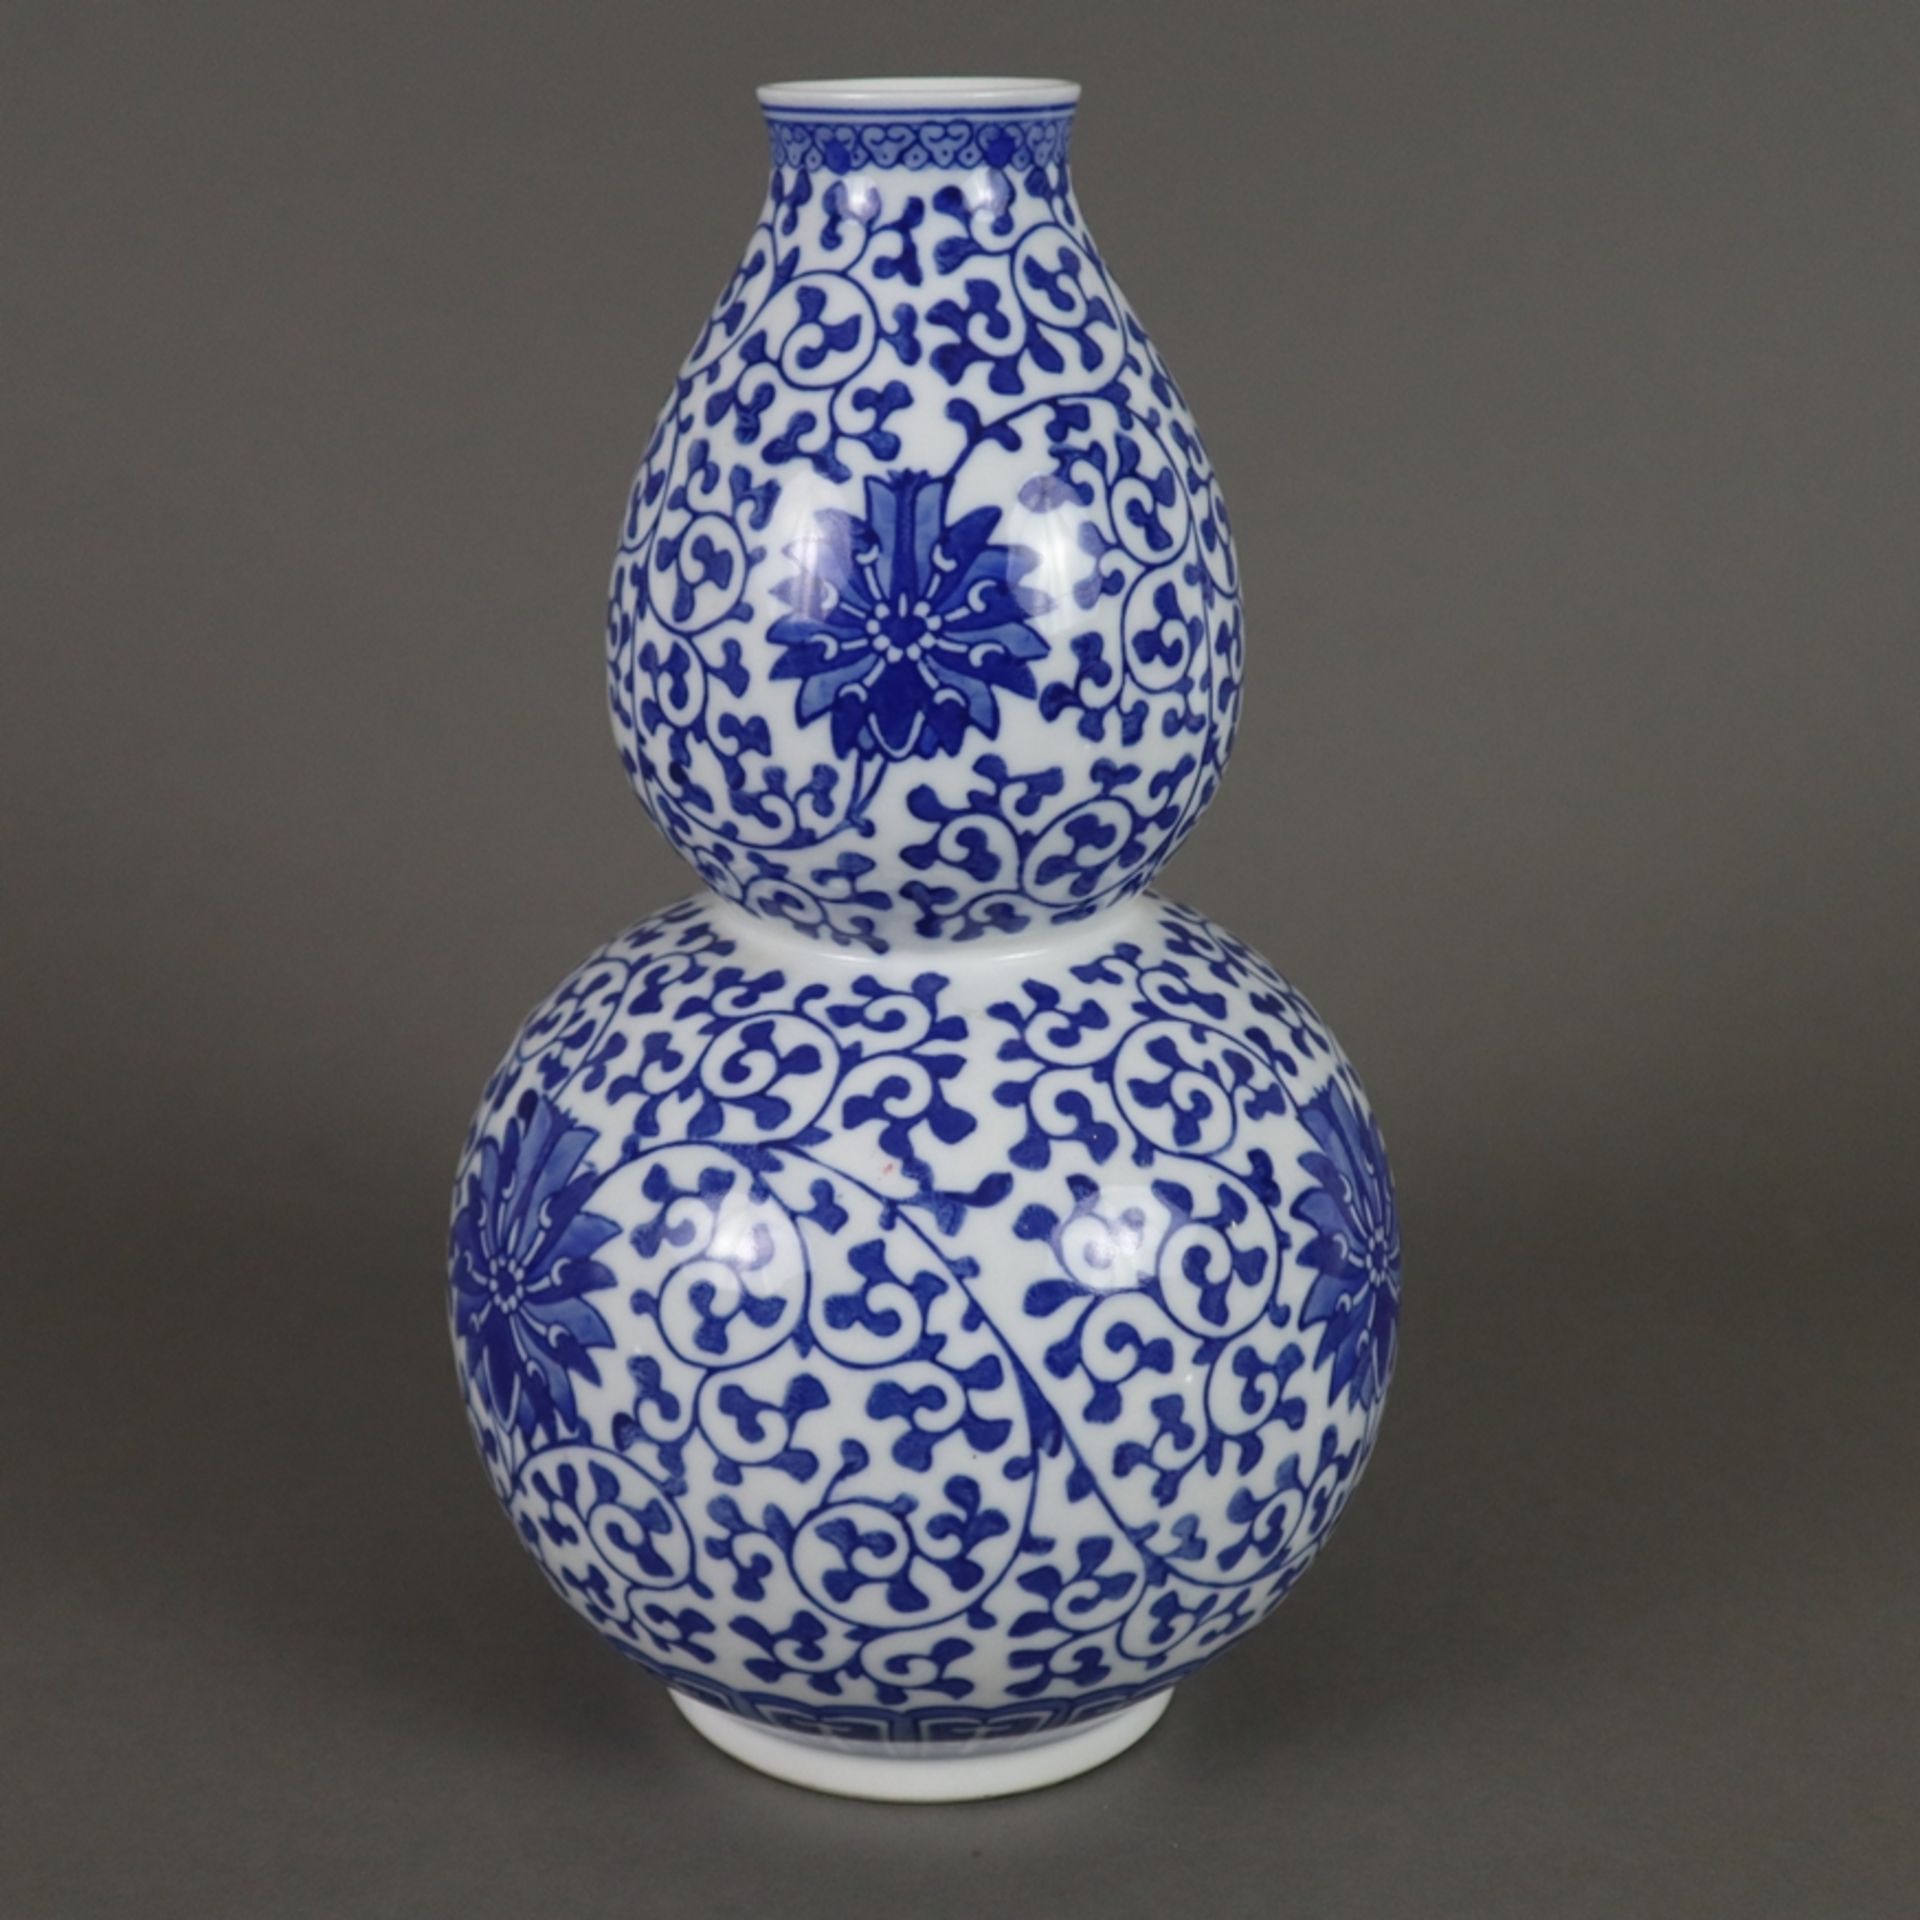 Doppelkürbisvase - China 20.Jh., Porzellan, Dekor mit mäandrierenden Lotosranken in Unterglasurblau